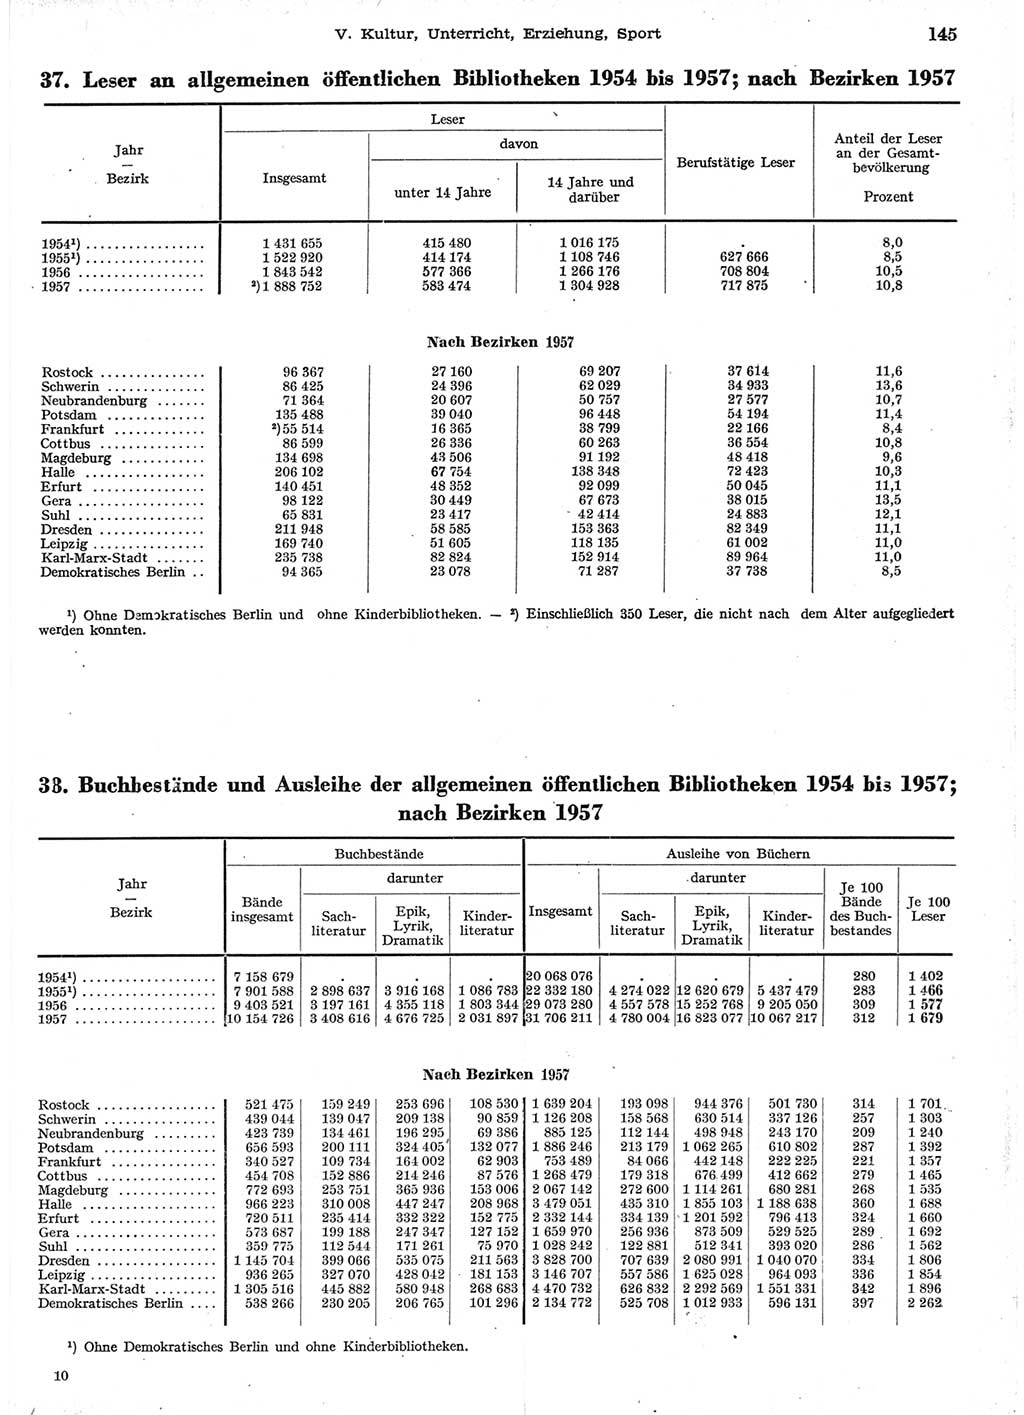 Statistisches Jahrbuch der Deutschen Demokratischen Republik (DDR) 1958, Seite 145 (Stat. Jb. DDR 1958, S. 145)